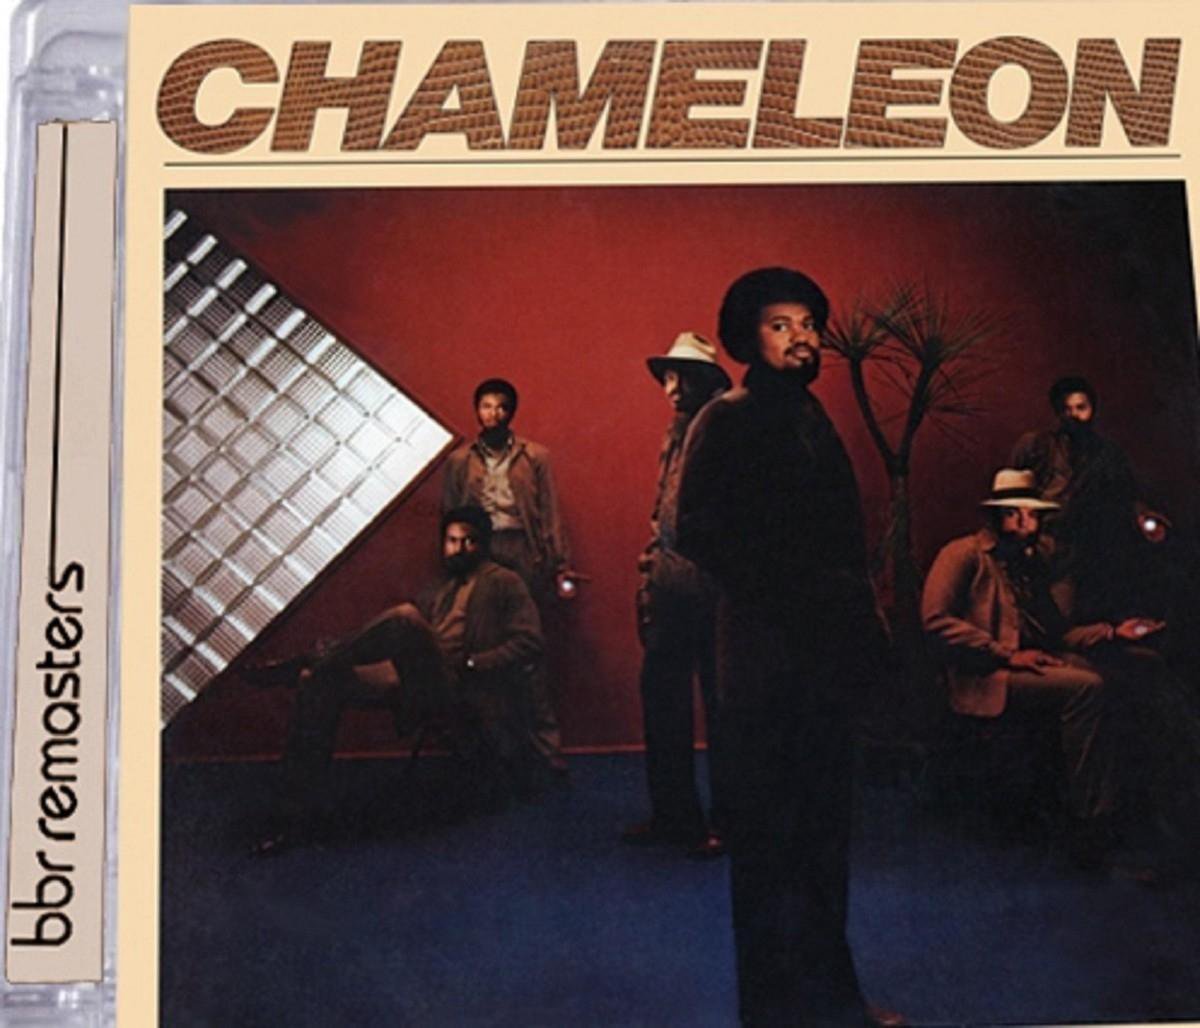 Chameleon: Expanded Edition - Chameleon